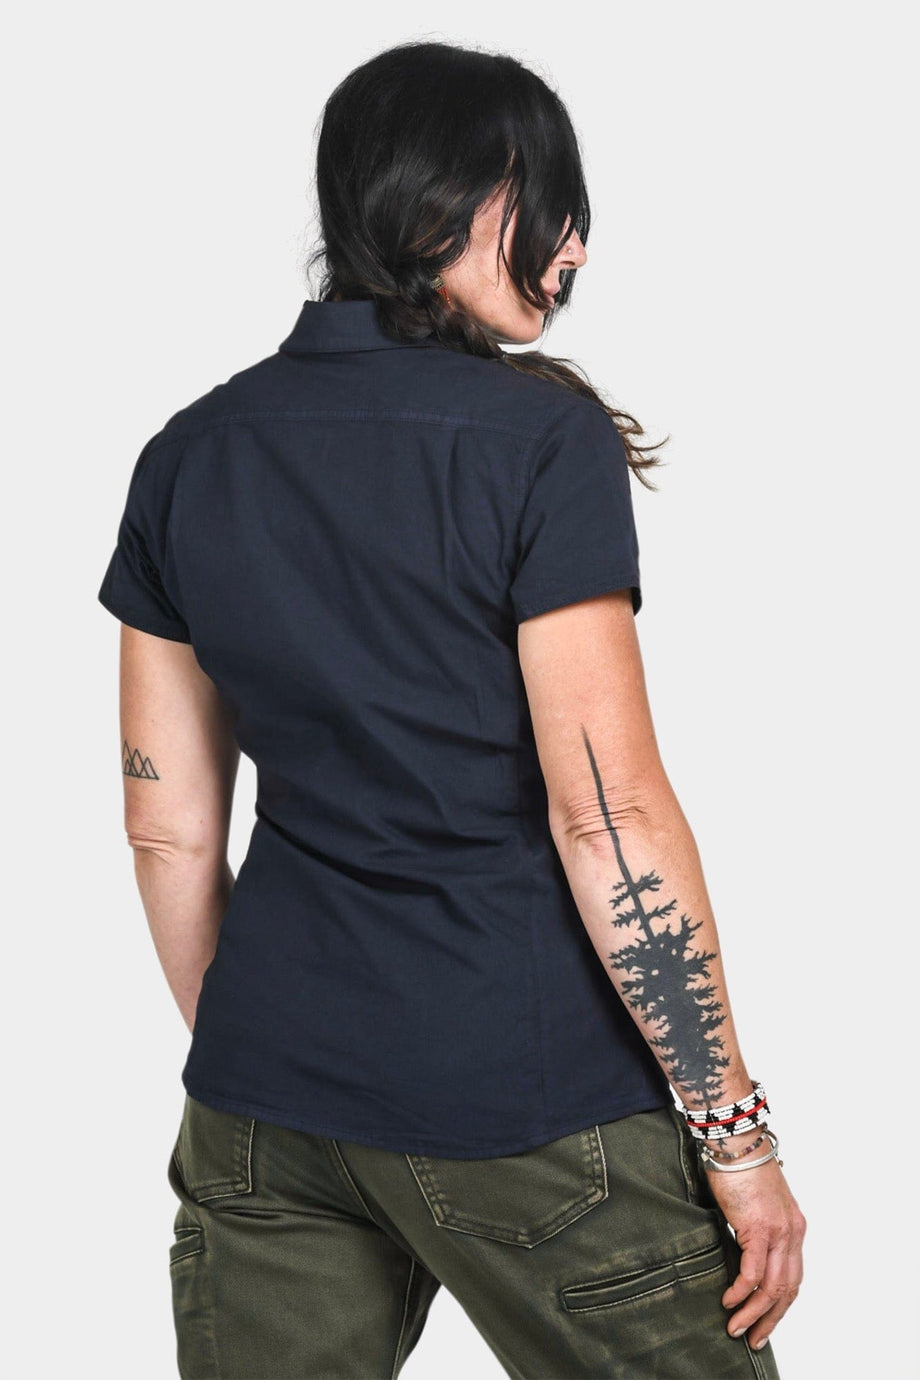 Womens Mechanic Work Shirt | Dovetail Workwear